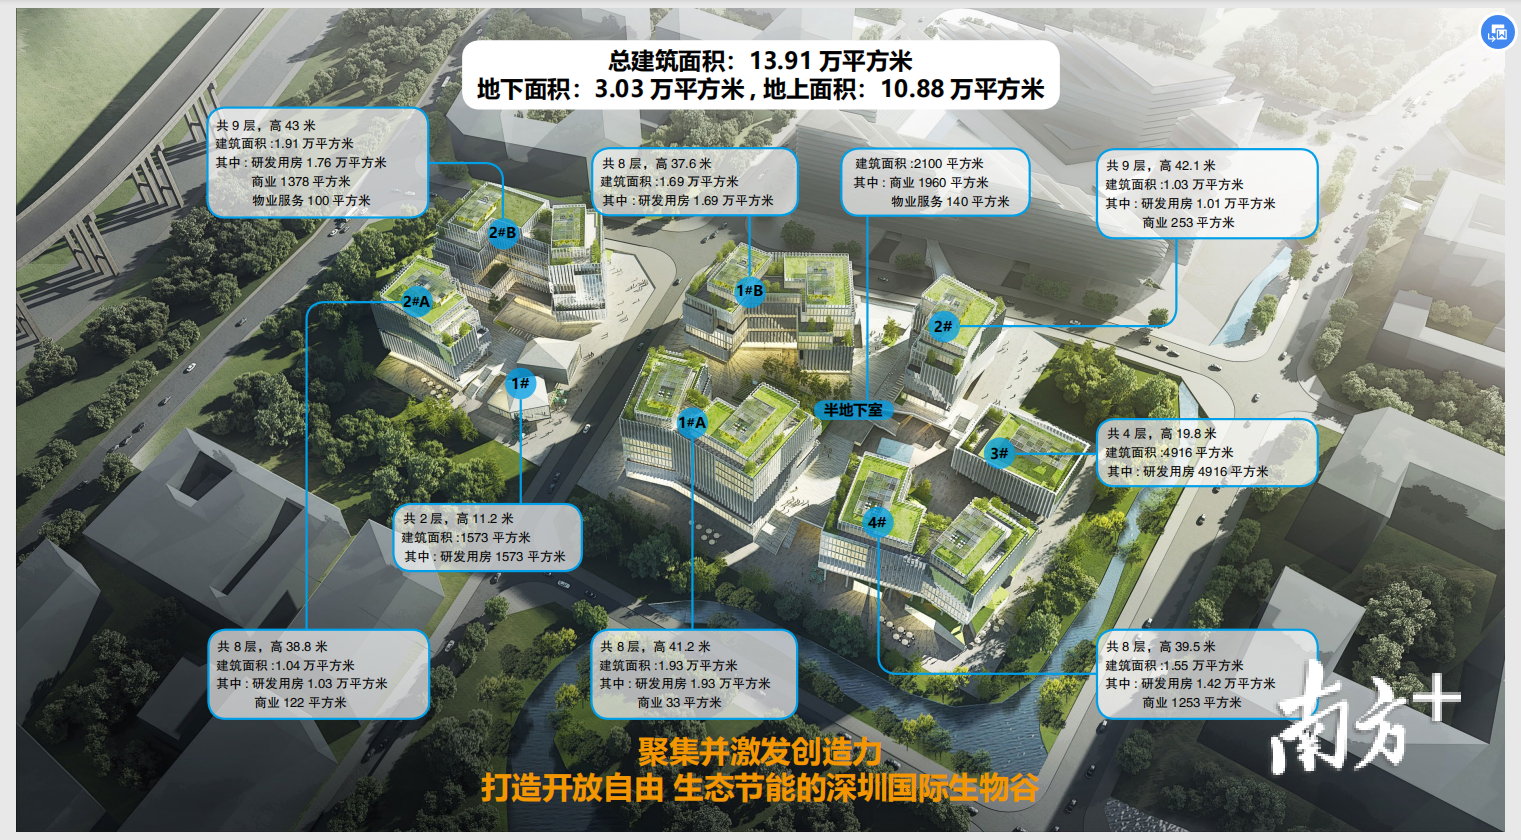 生物家园项目位于深圳国际生物谷坝光核心启动区。